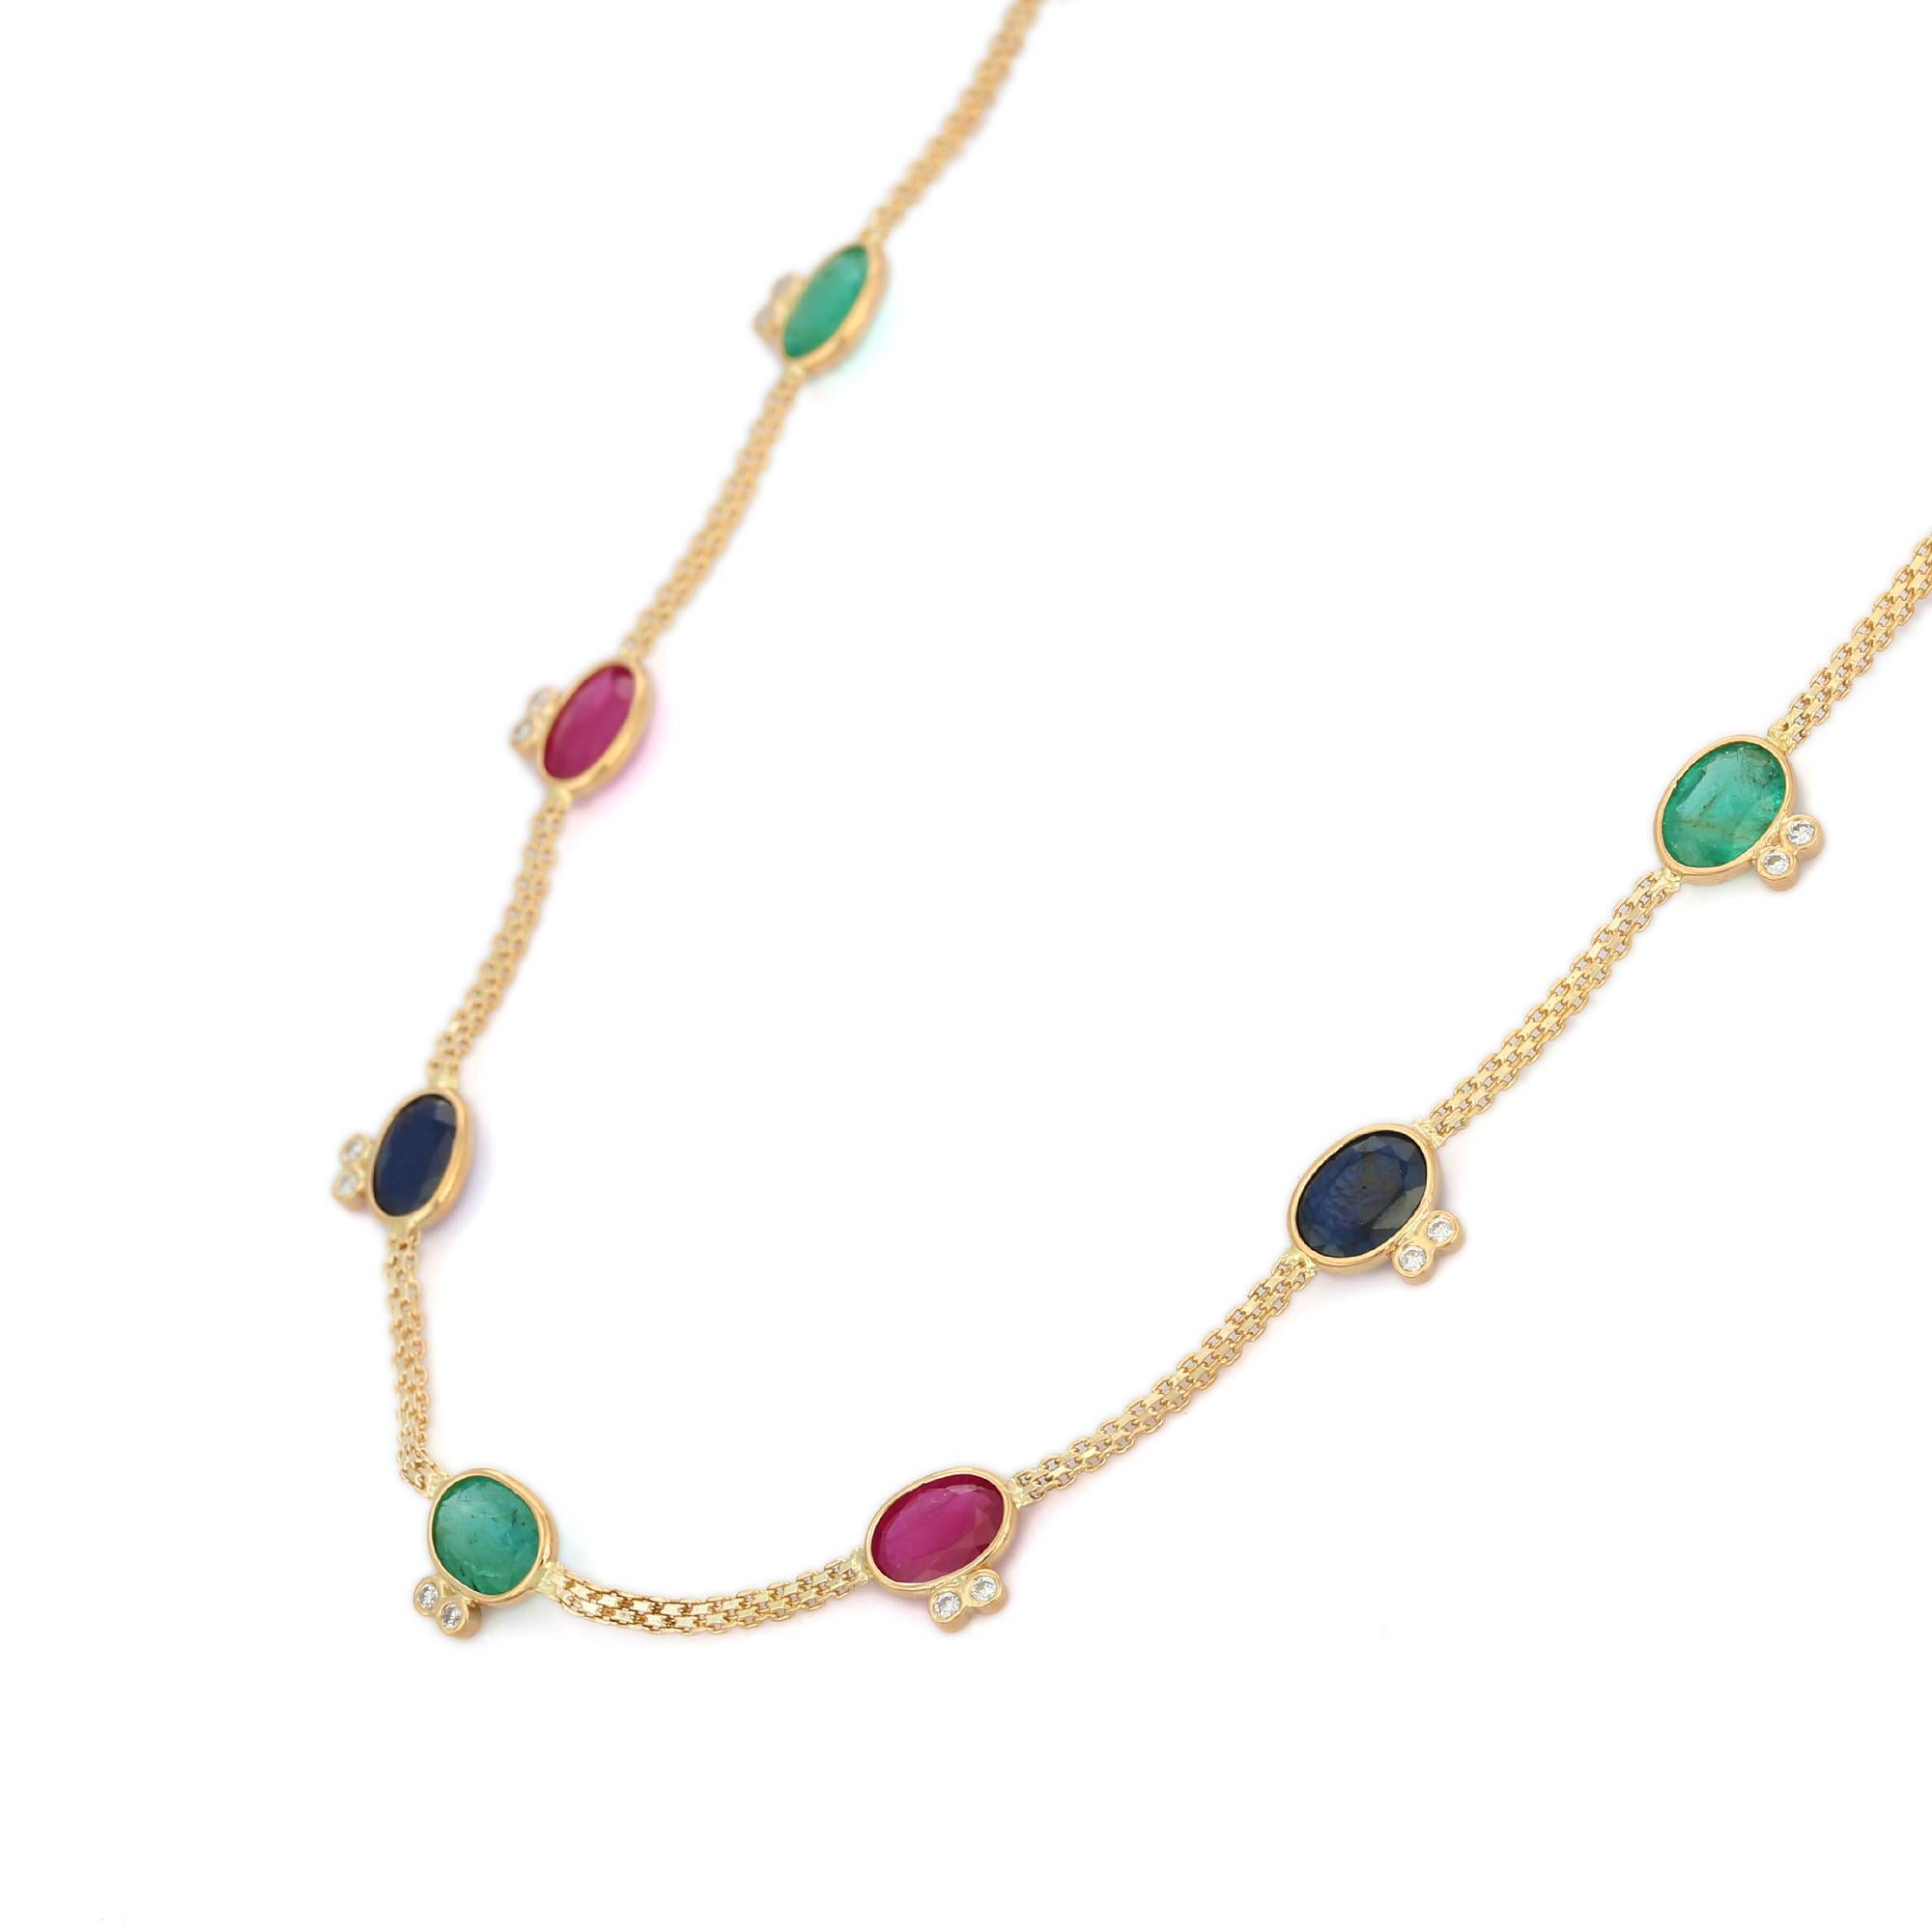 Multi-Edelstein-Halskette aus 18-karätigem Gold, besetzt mit Smaragden, Rubinen, Saphiren und Diamanten im Achteckschliff.
Ergänzen Sie Ihren Look mit dieser eleganten Perlenkette mit mehreren Edelsteinen. Dieses atemberaubende Schmuckstück wertet